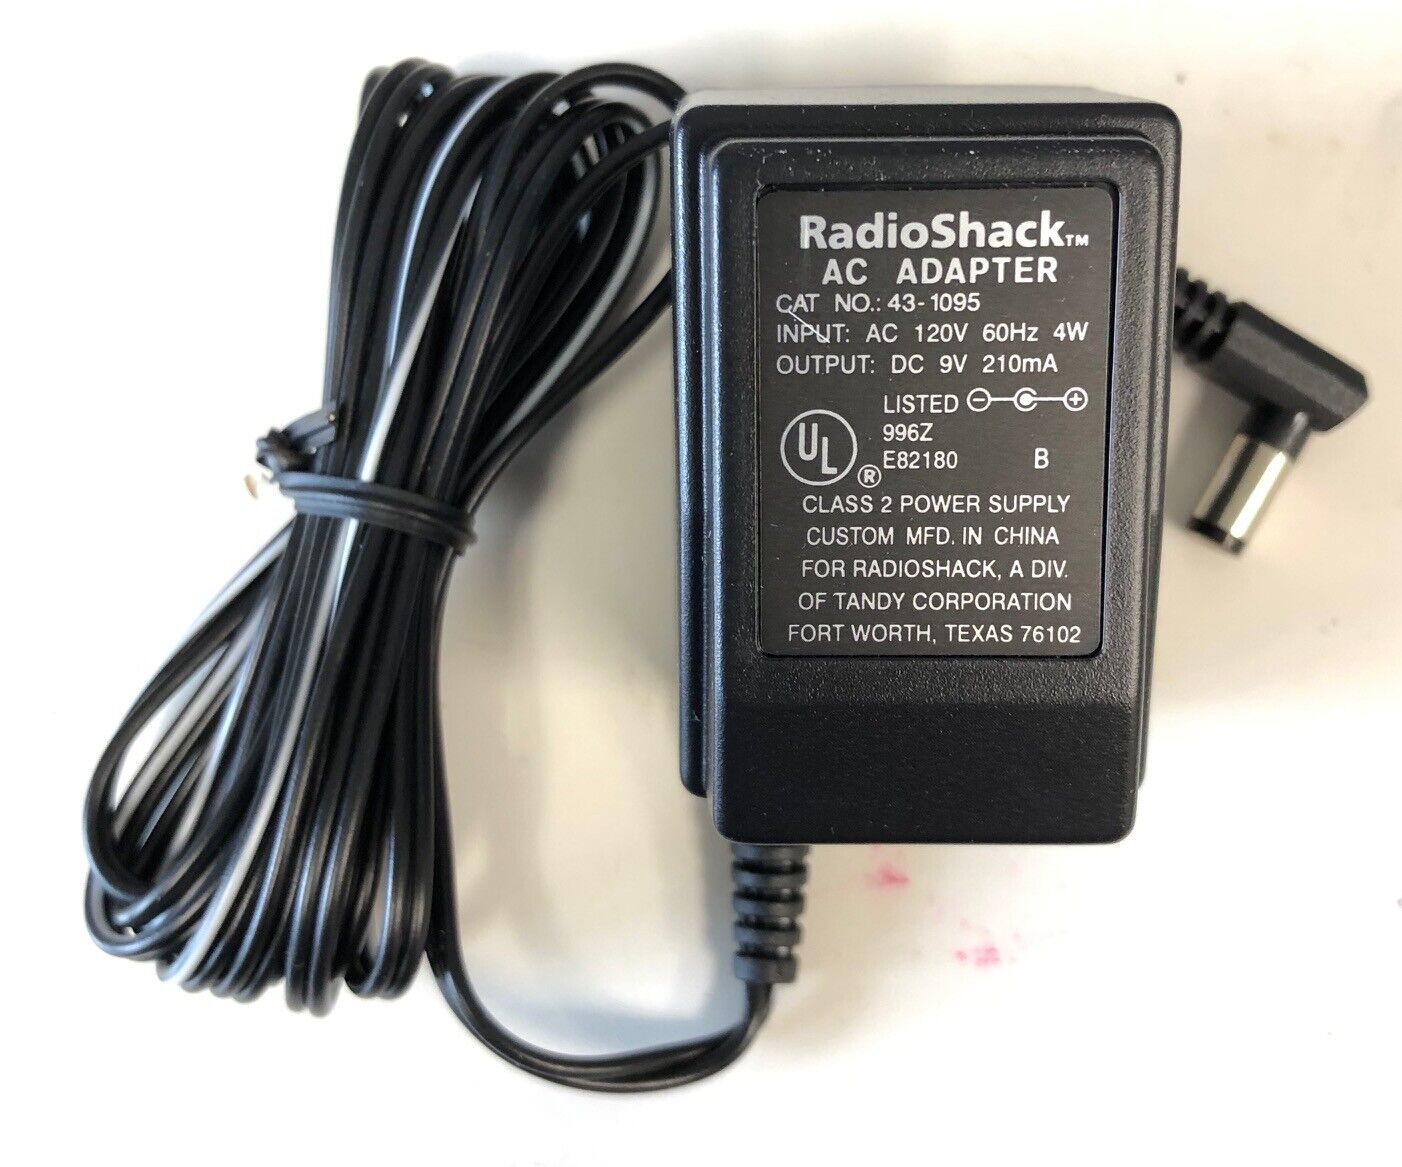 *Brand NEW*RadioShack Output DC 9V 210mA AC Adaptor Cat NO 43-1095 Class 2 Power Supply